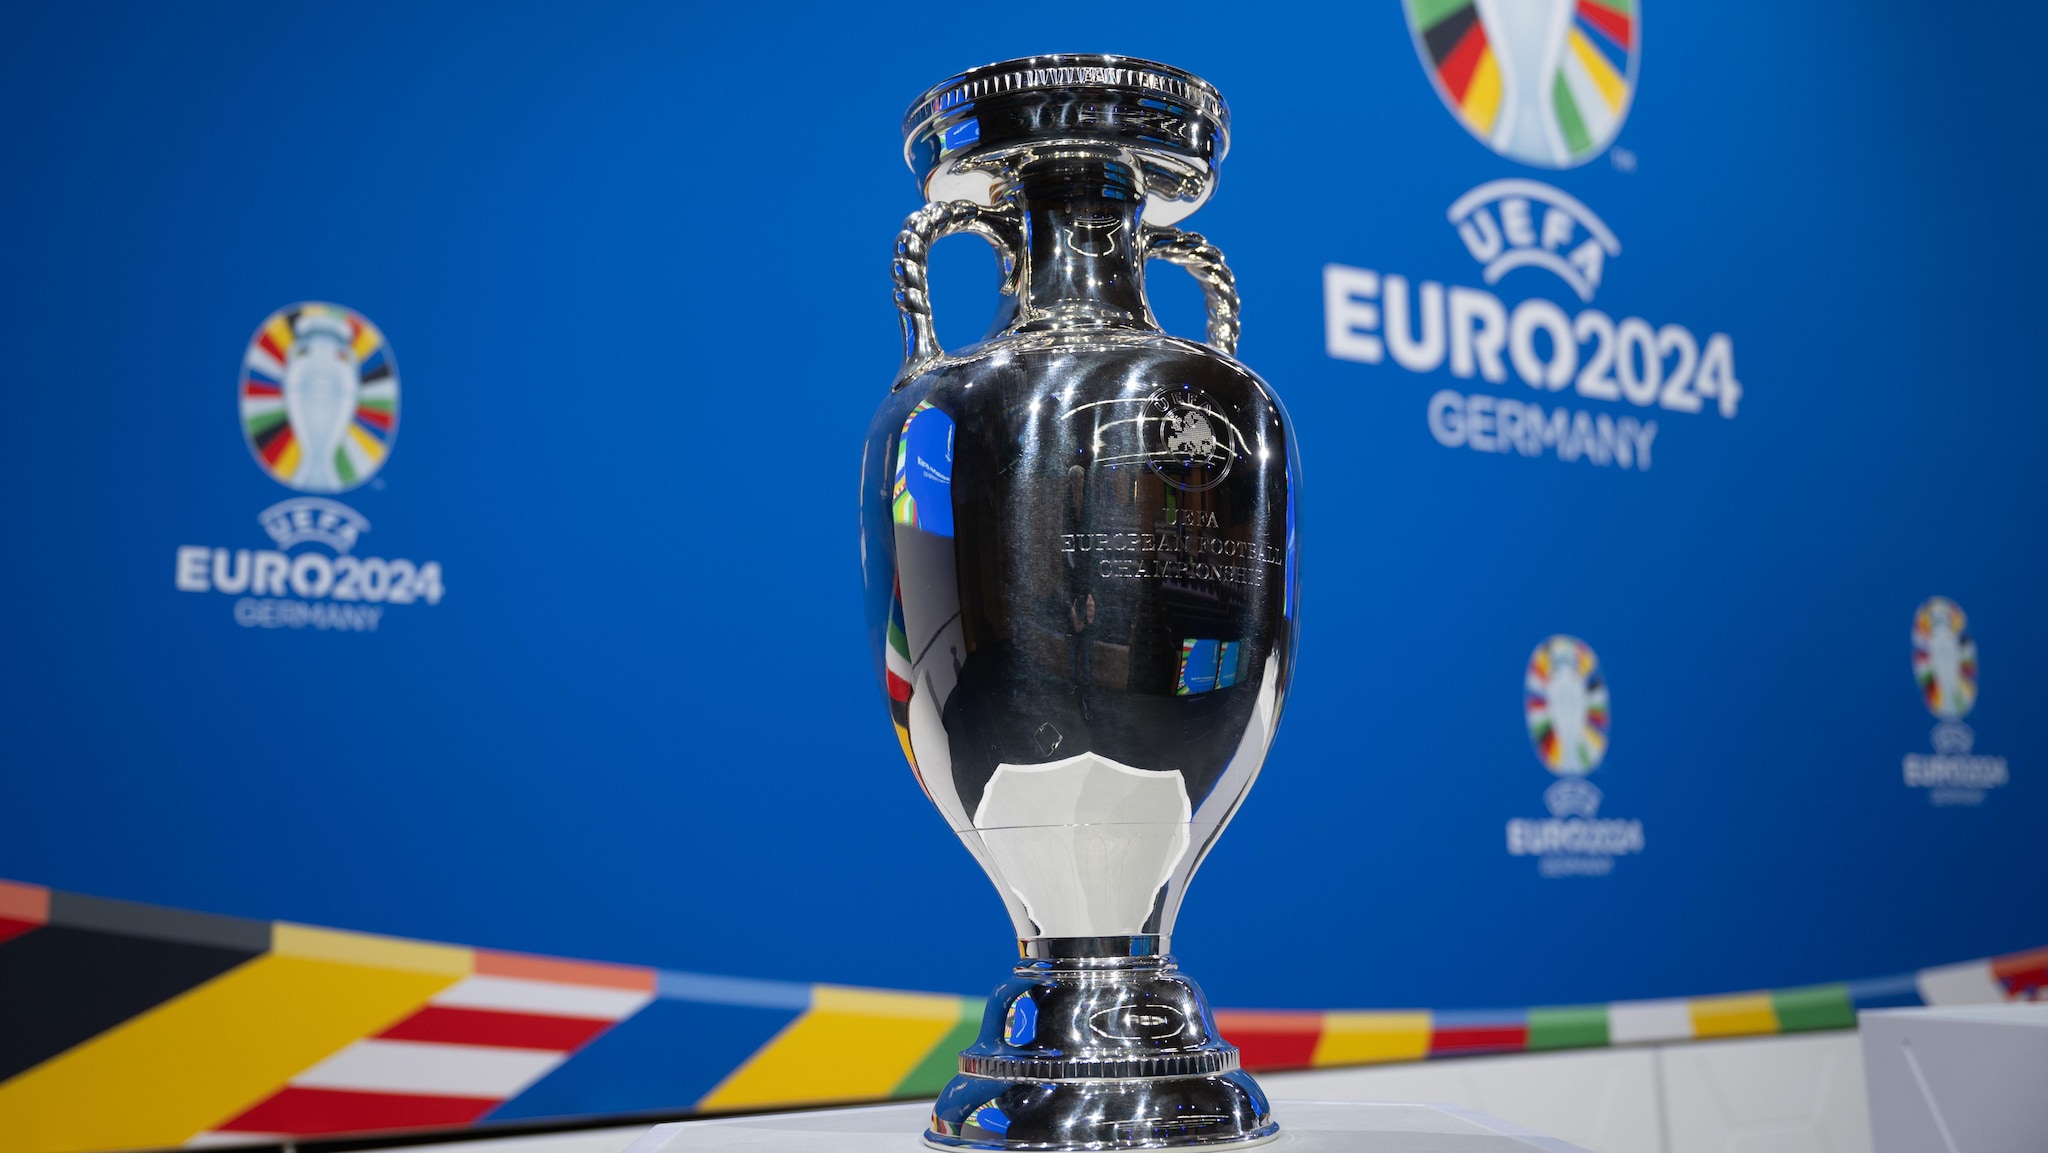 EURO 2024, come funziona la competizione? Tutto sui gironi, gli stadi e la fase ad eliminazione diretta